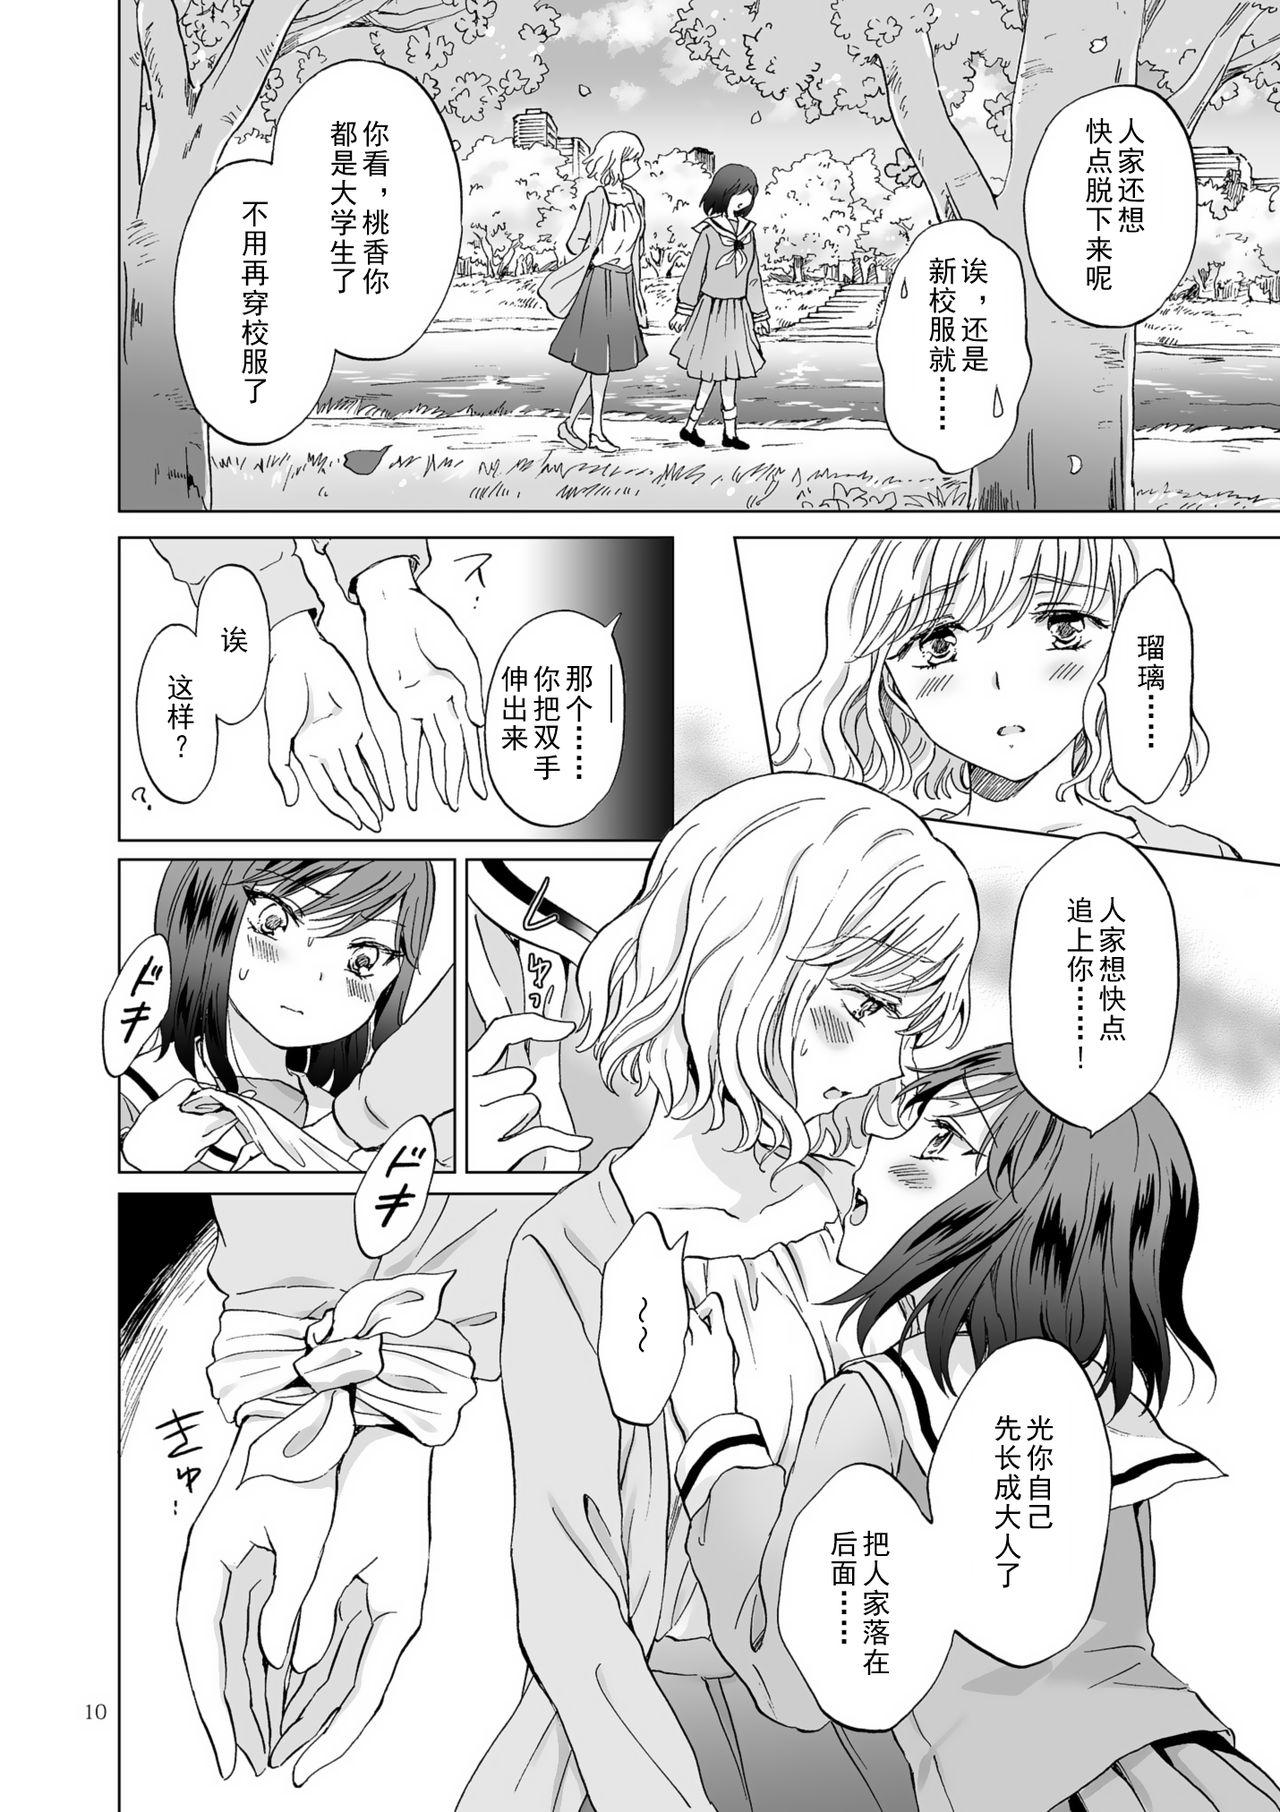 Soft Kinbaku Date - Original Female - Page 10